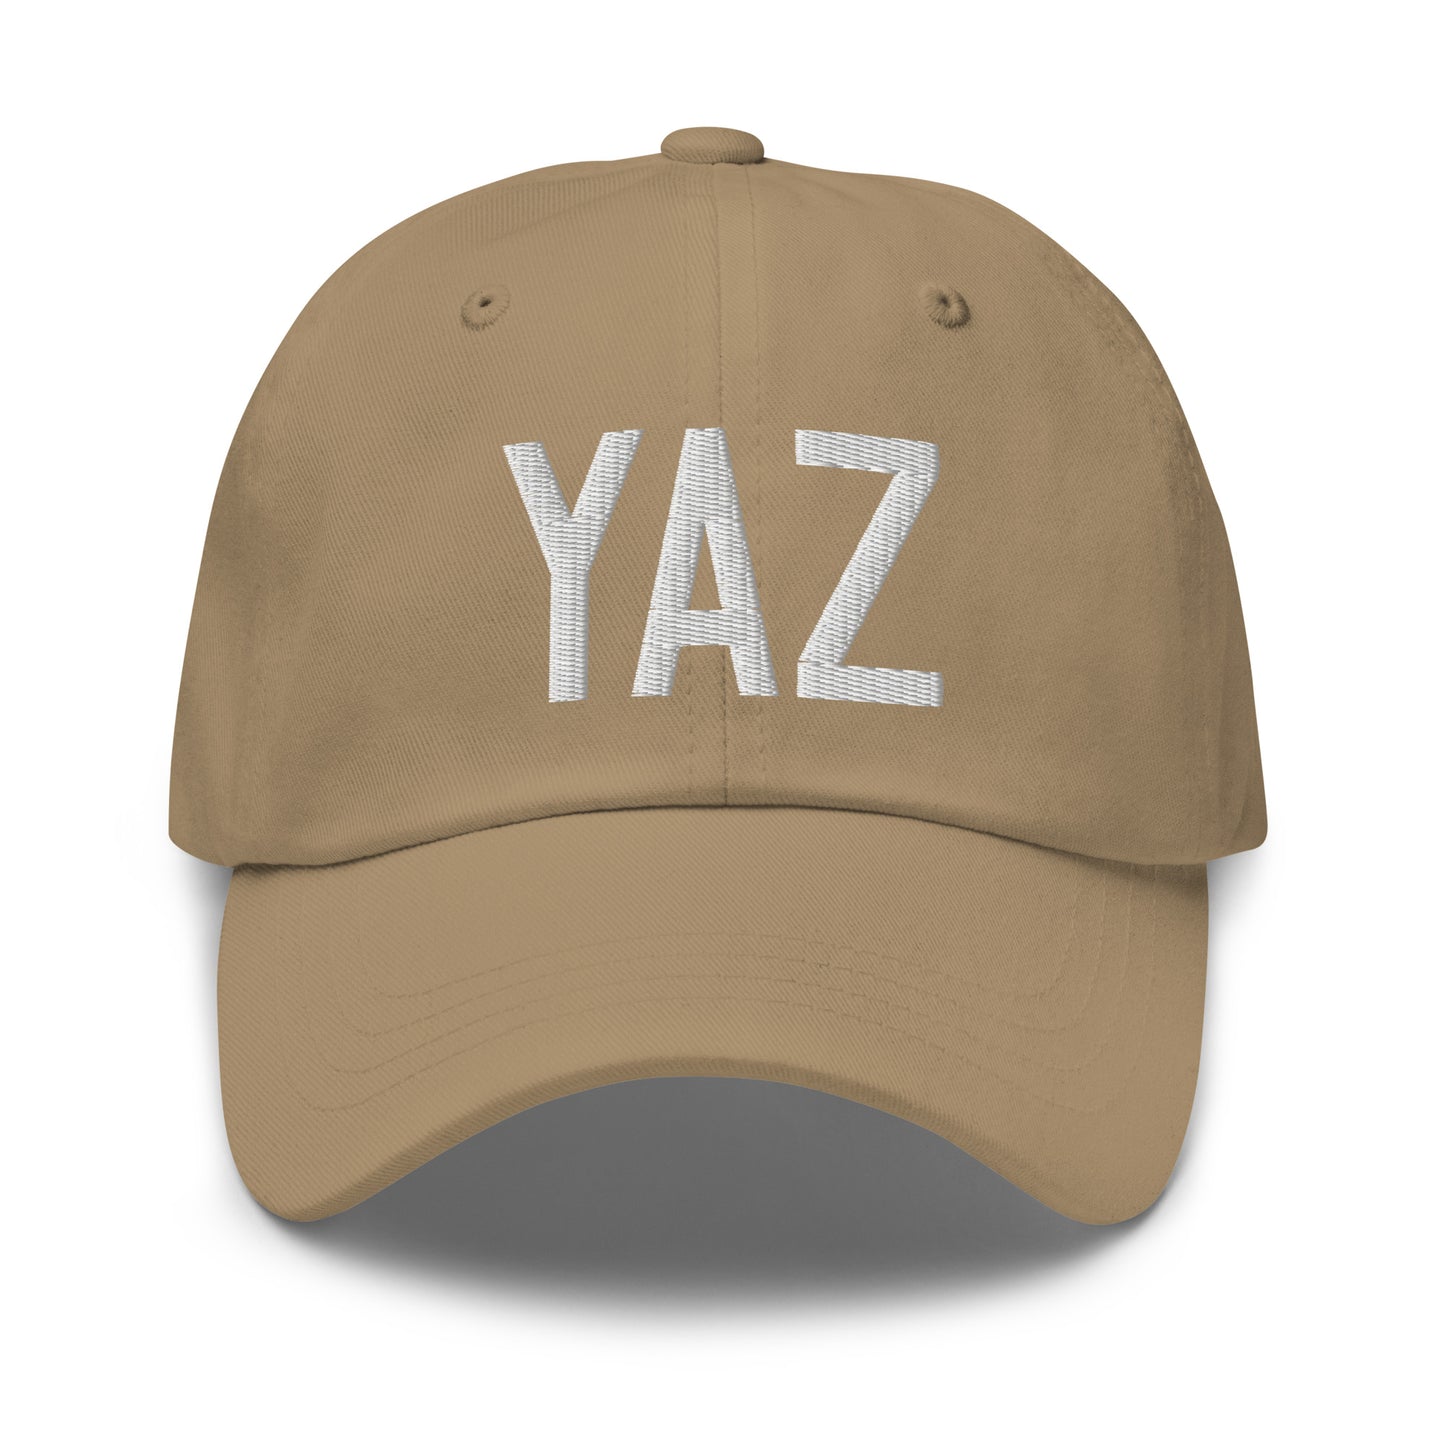 Airport Code Baseball Cap - White • YAZ Tofino • YHM Designs - Image 22